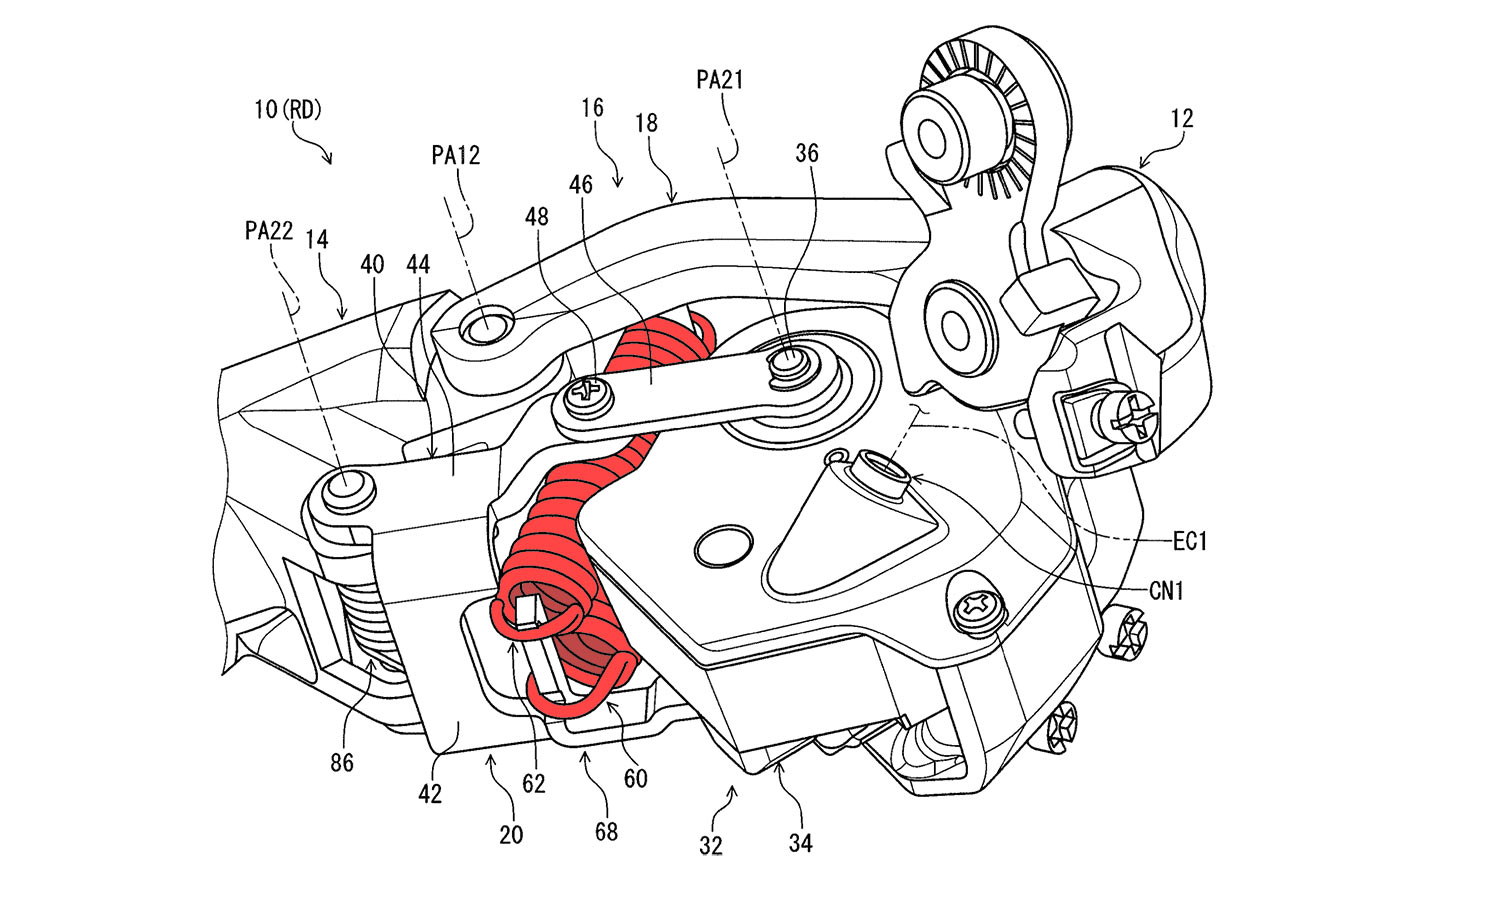 Concetto di prototipo di deragliatore a cambio elettronico galleggiante resistente agli urti con brevetto Shimano Di2,